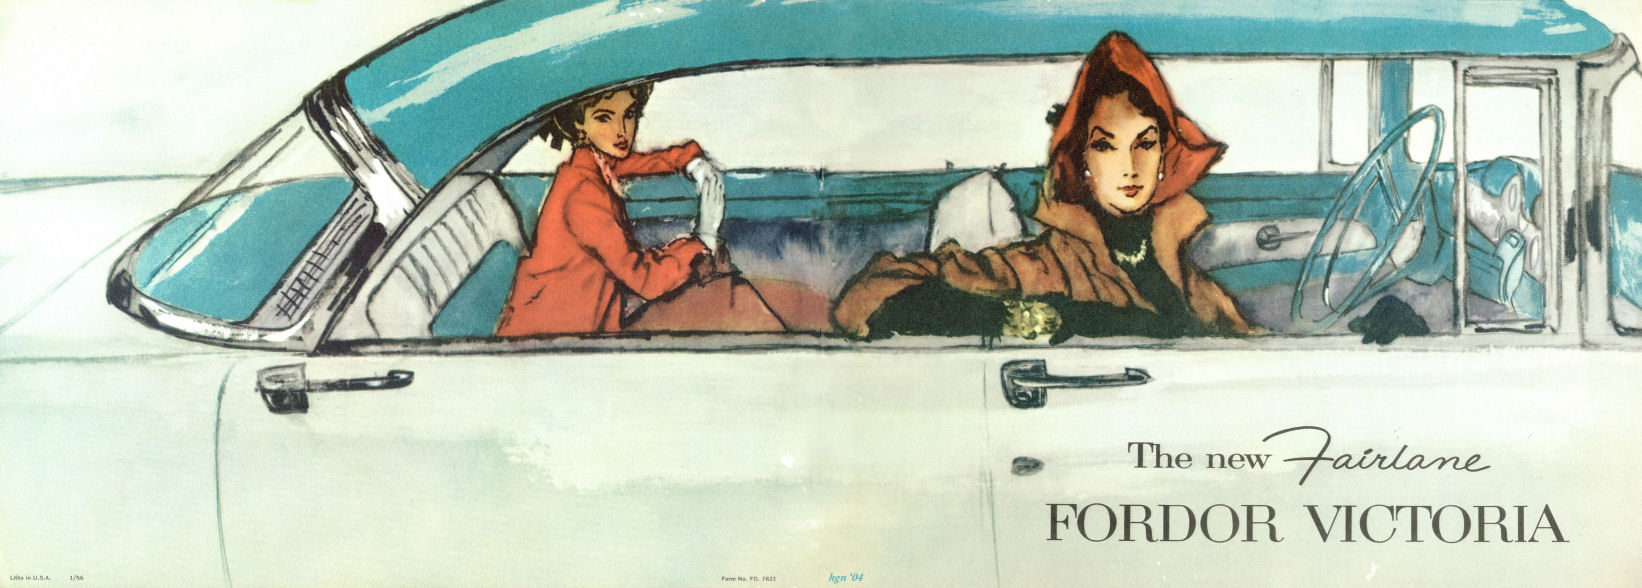 1956 Ford Fairlane Victoria Brochure